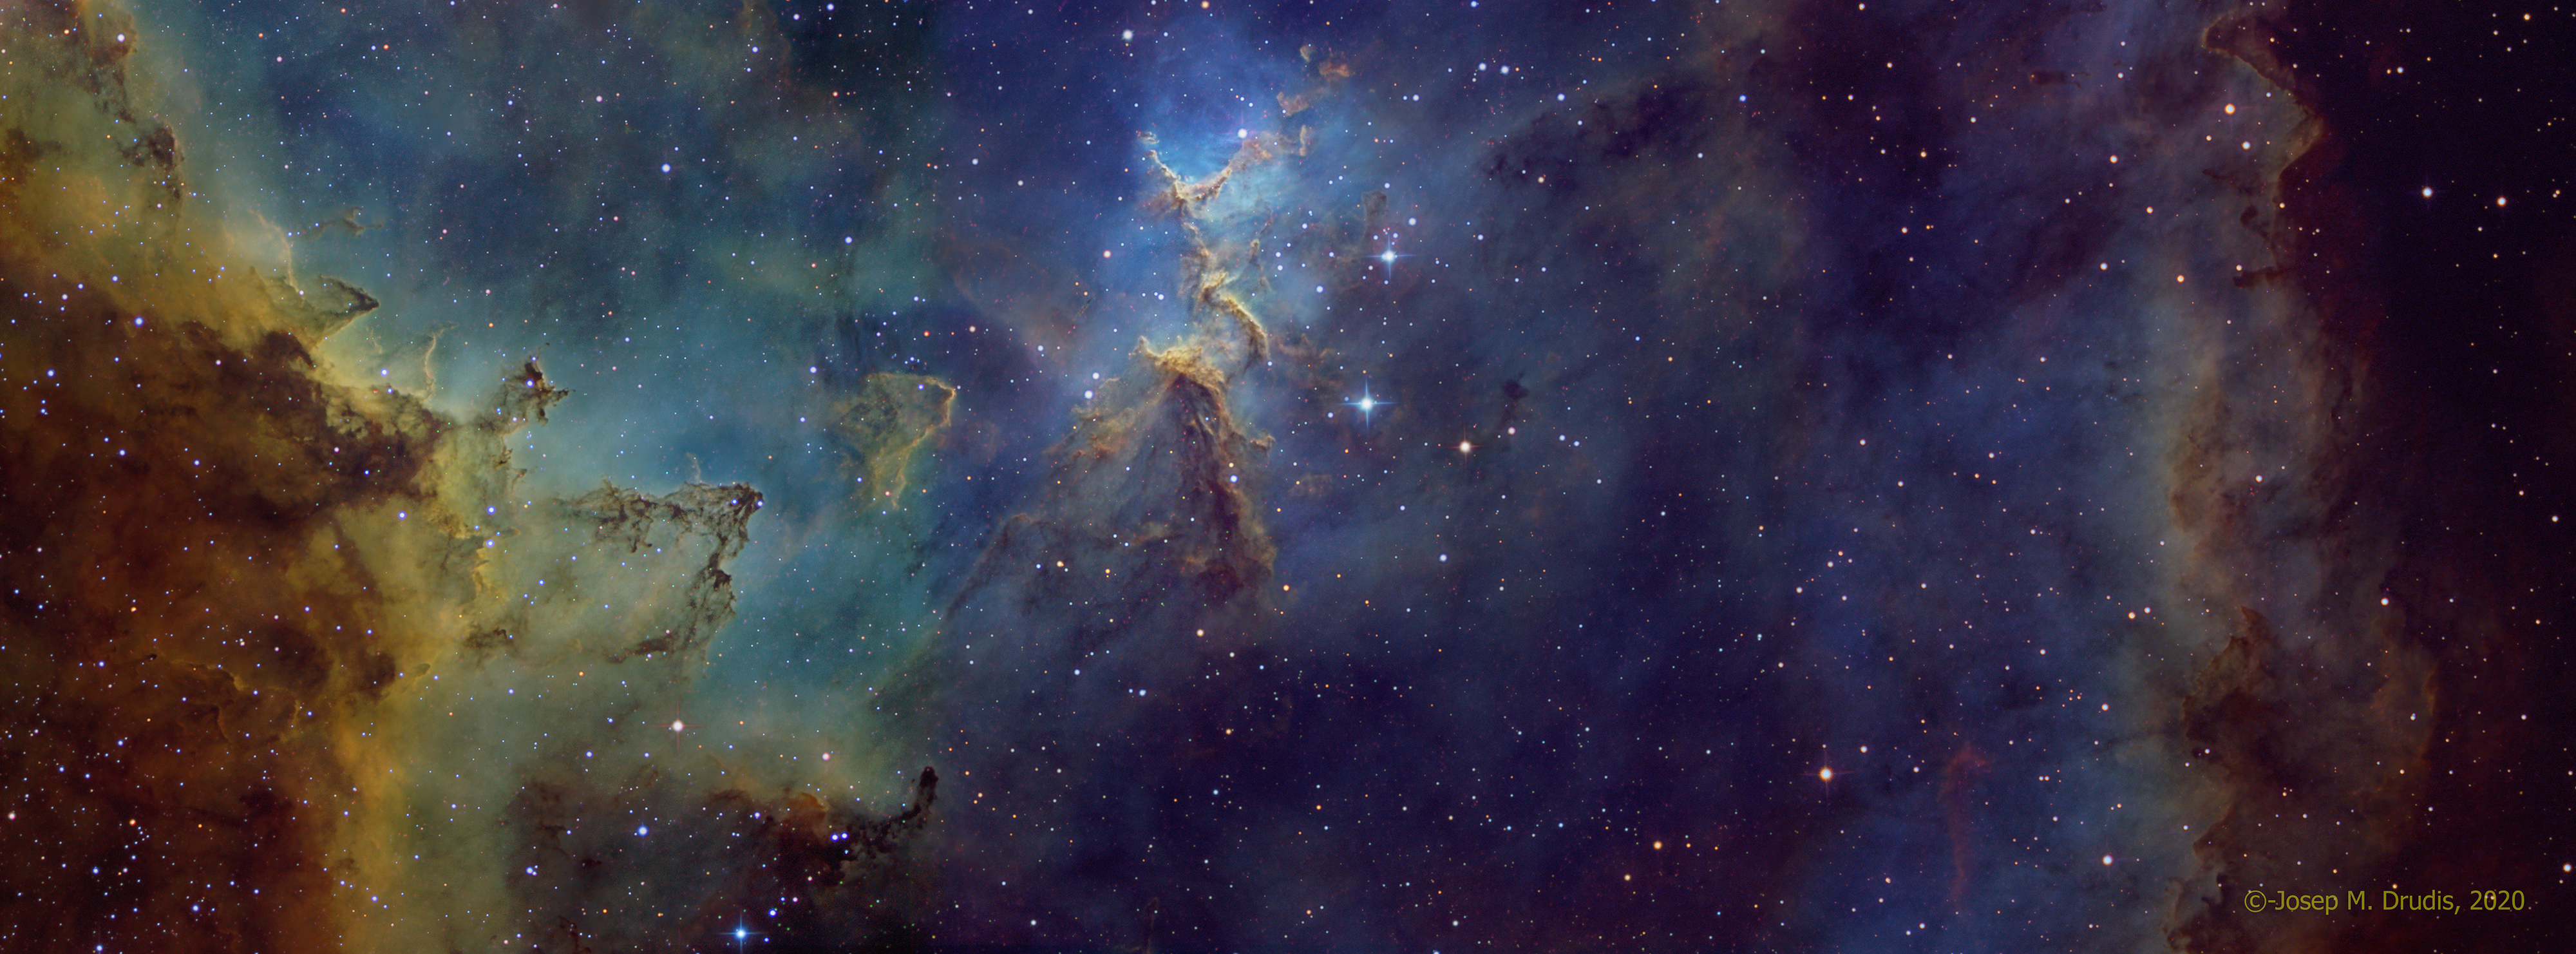 IC 1805, the Heart Nebula – Astrodrudis